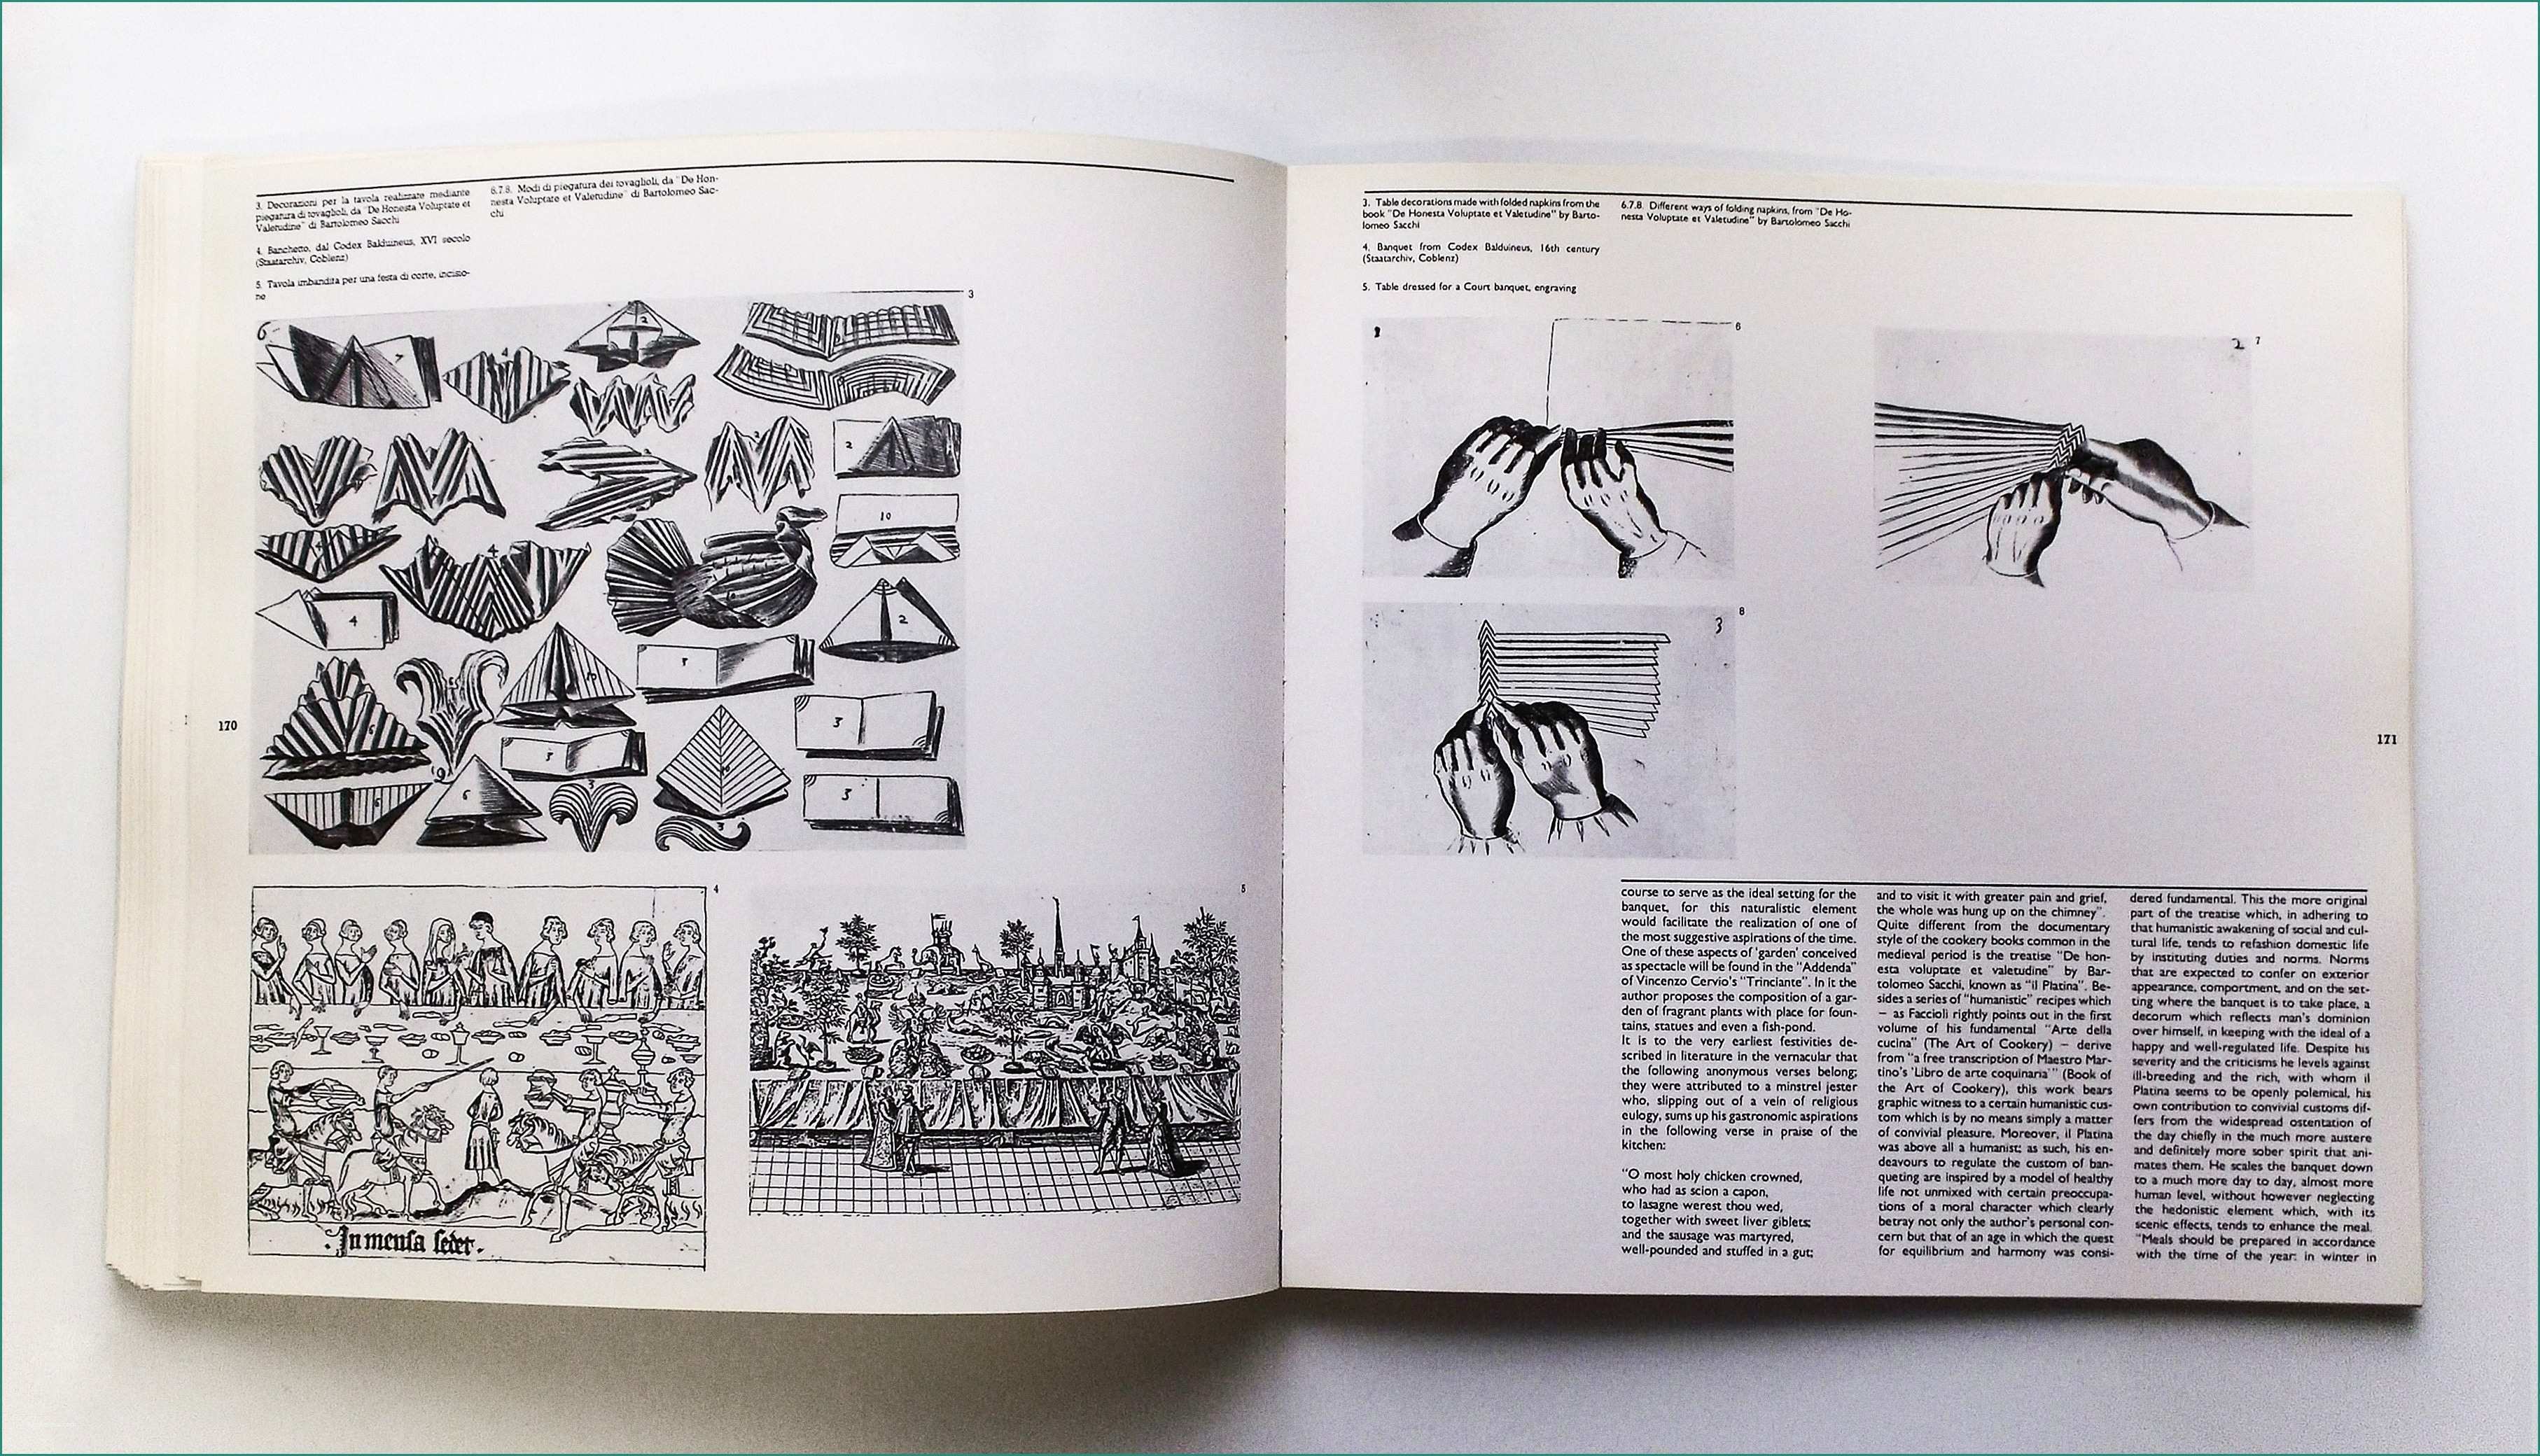 Esselunga Nuovo Catalogo E Ais Design Storia E Ricerche Archives Pagina 9 Di 16 Ais Design